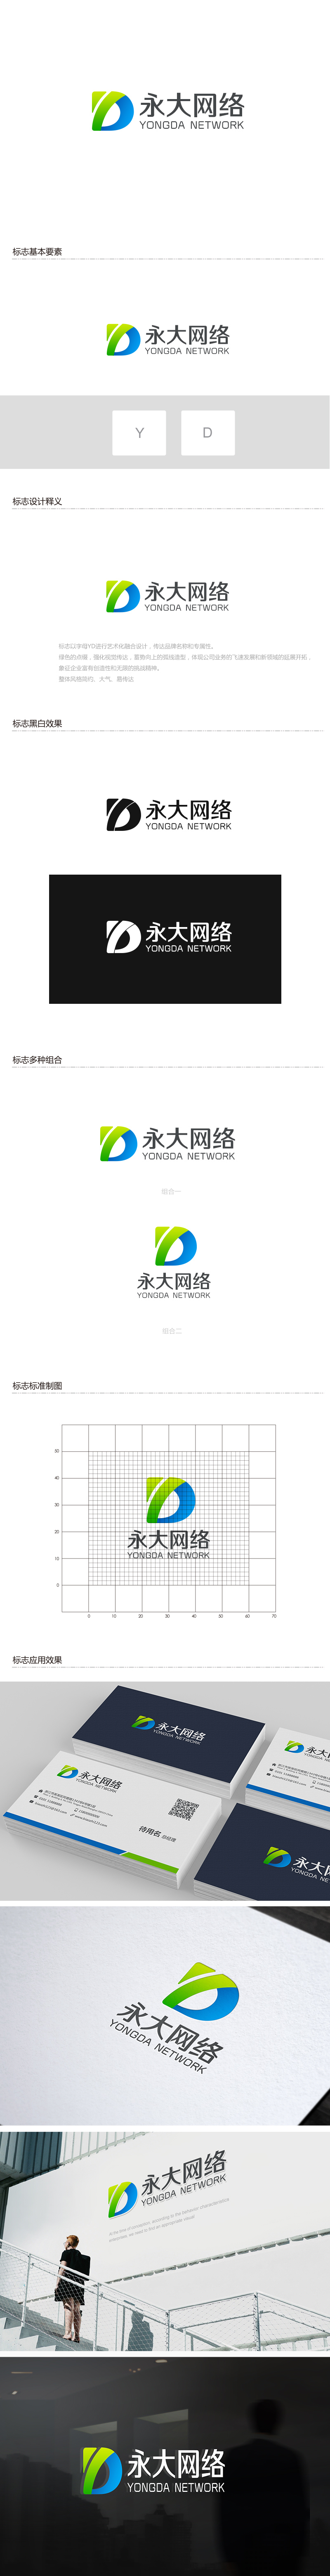 永大网络logo设计